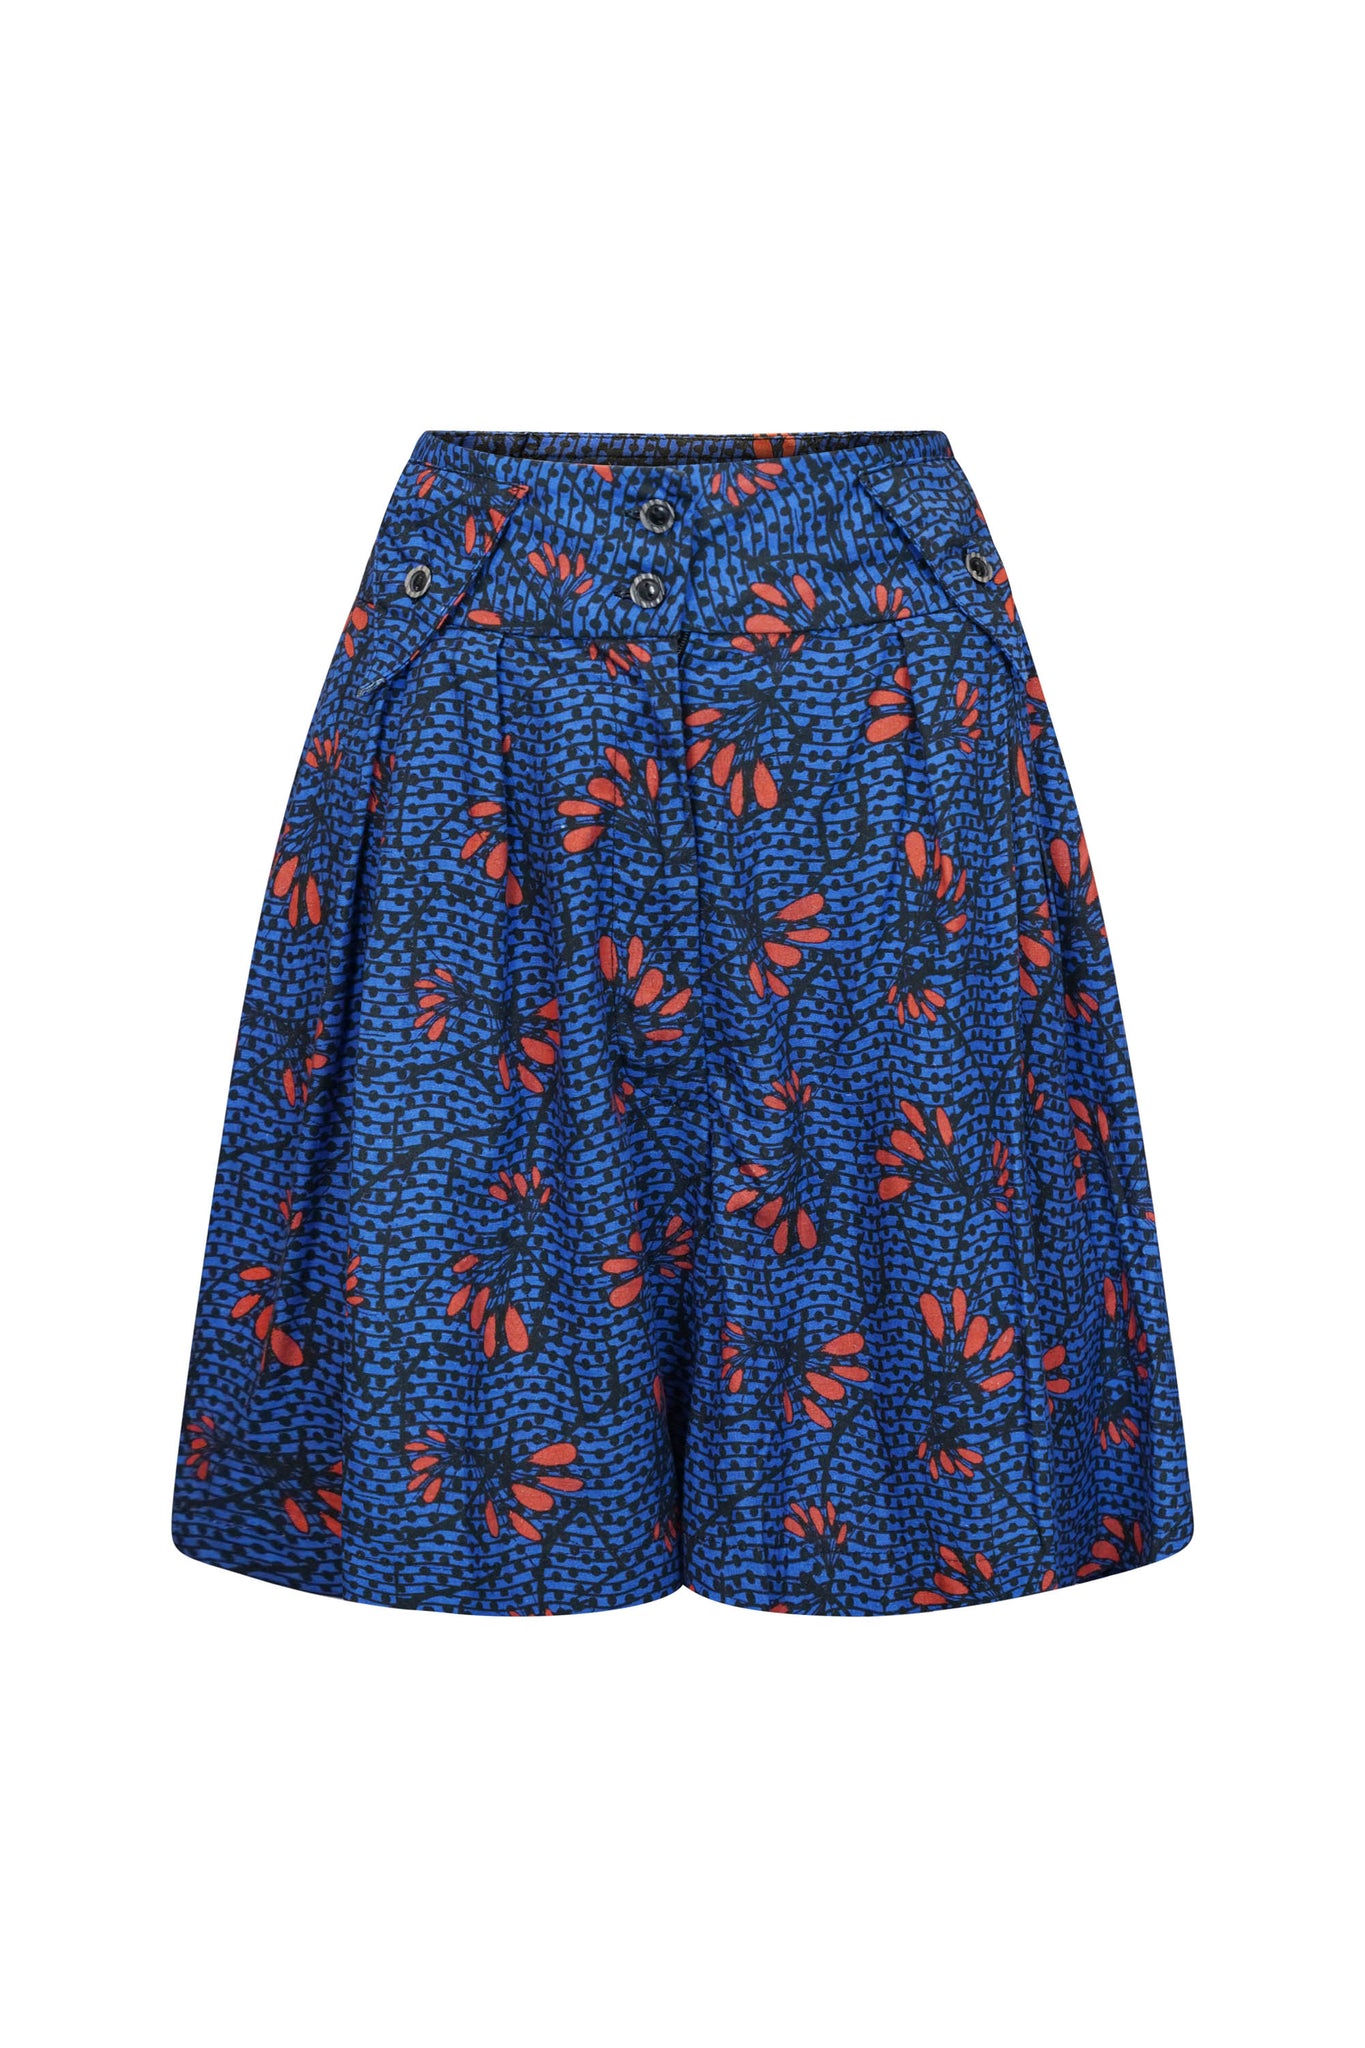 Aretta Vintage Shorts - AfterGlow | GO OA OG 2.0